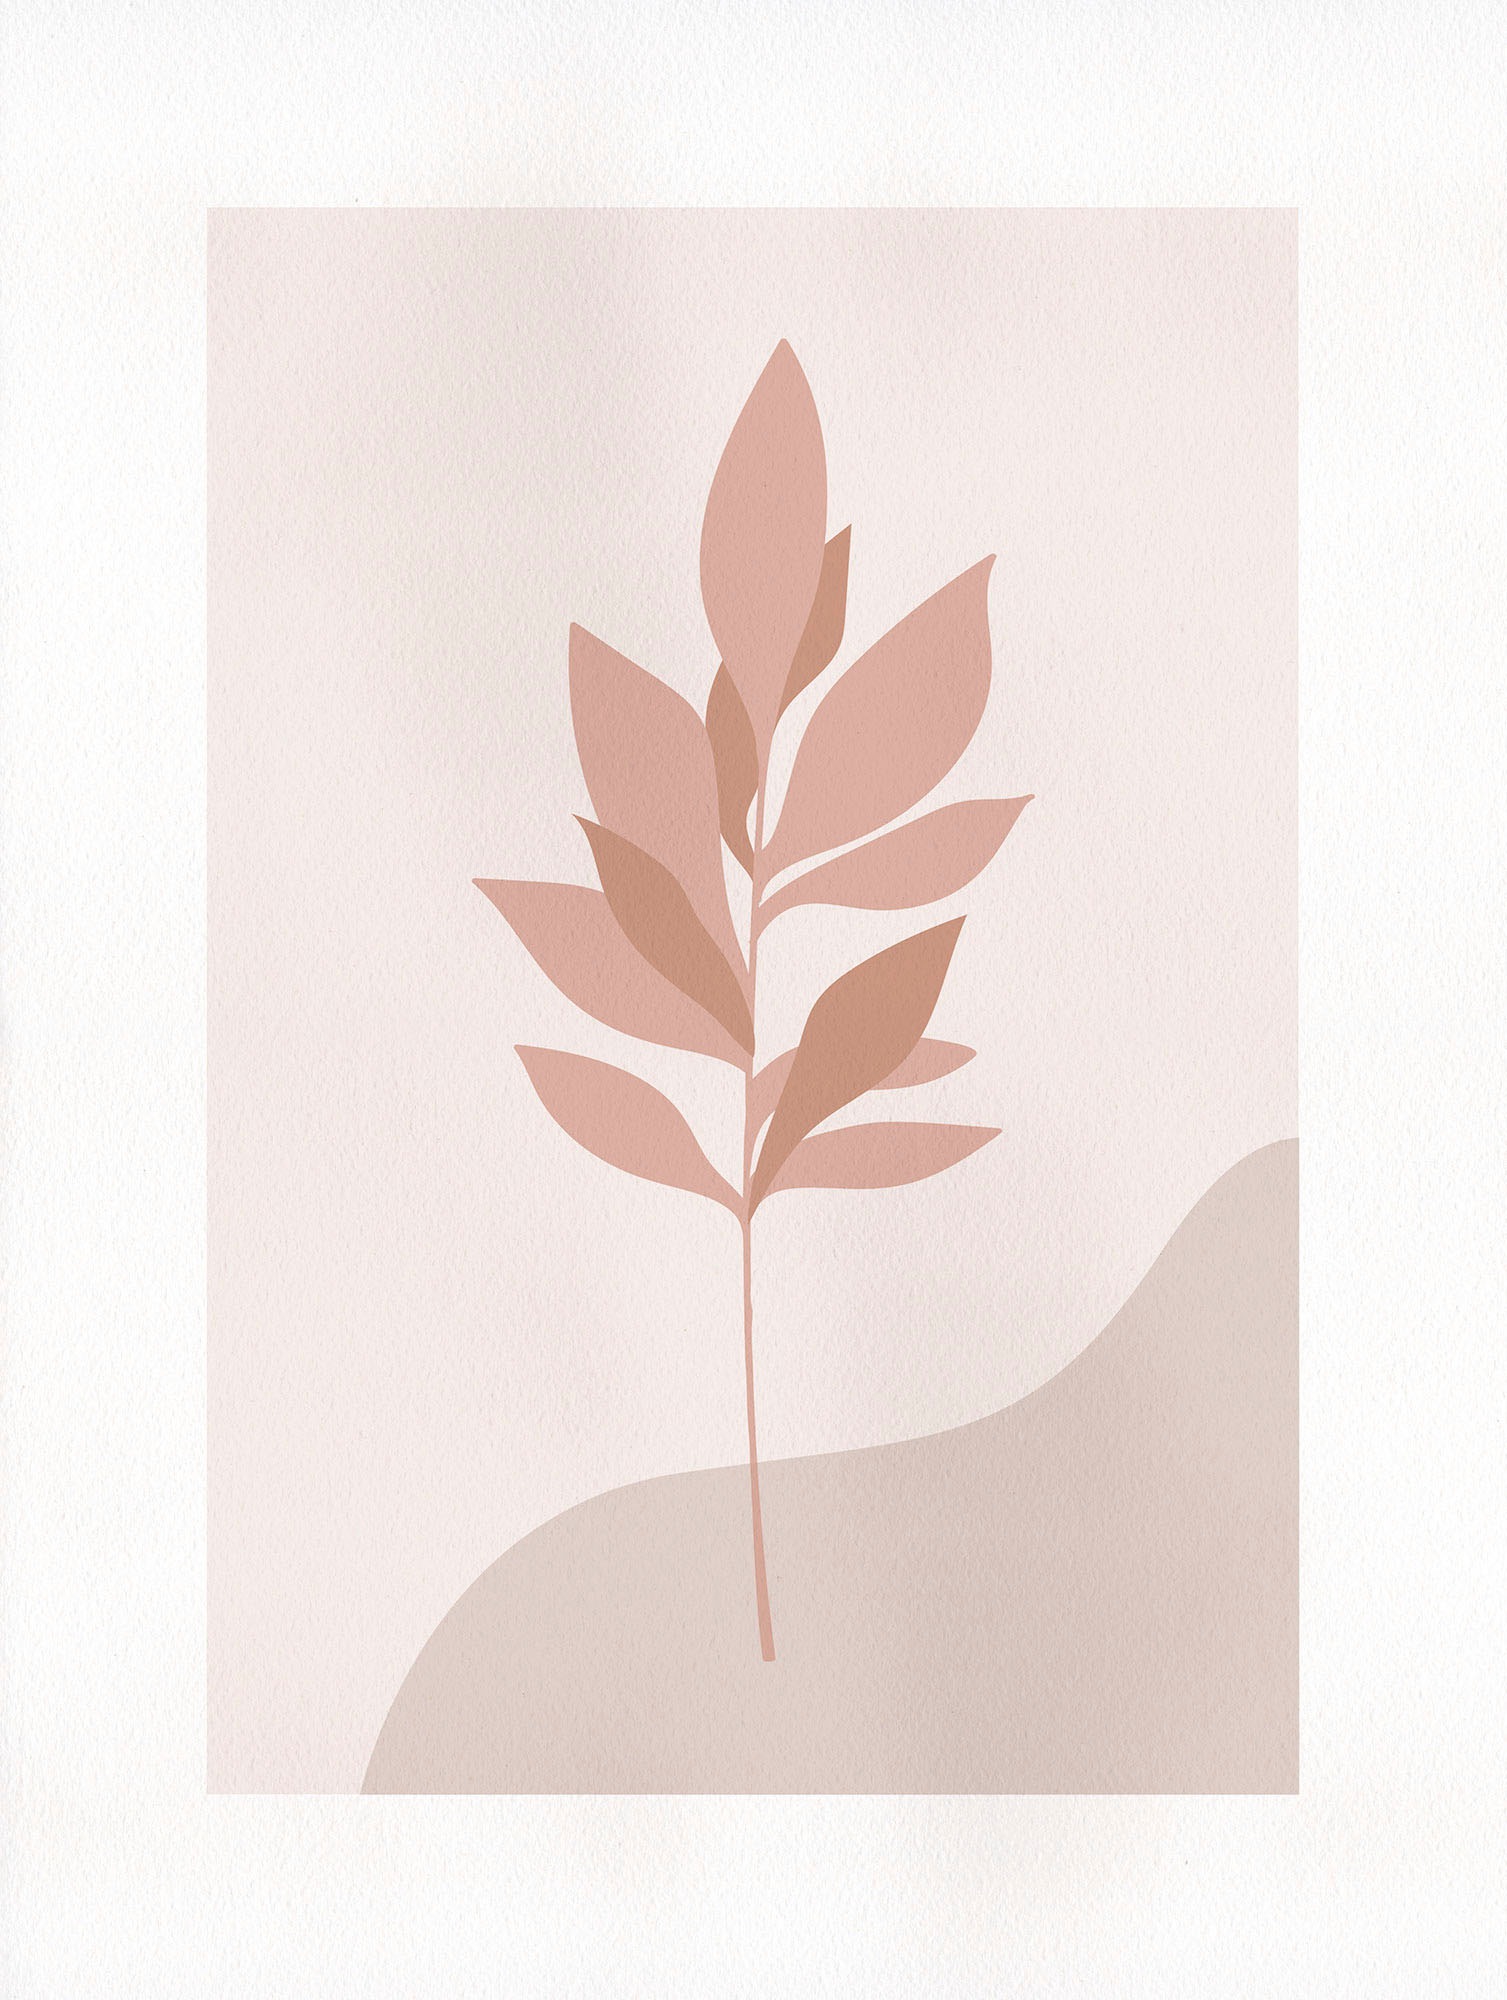 Komar Wandbild »Pink Desert«, (1 St.), Deutsches Premium-Poster Fotopapier mit seidenmatter Oberfläche und hoher Lichtbeständigkeit. Für fotorealistische Drucke mit gestochen scharfen Details und hervorragender Farbbrillanz.